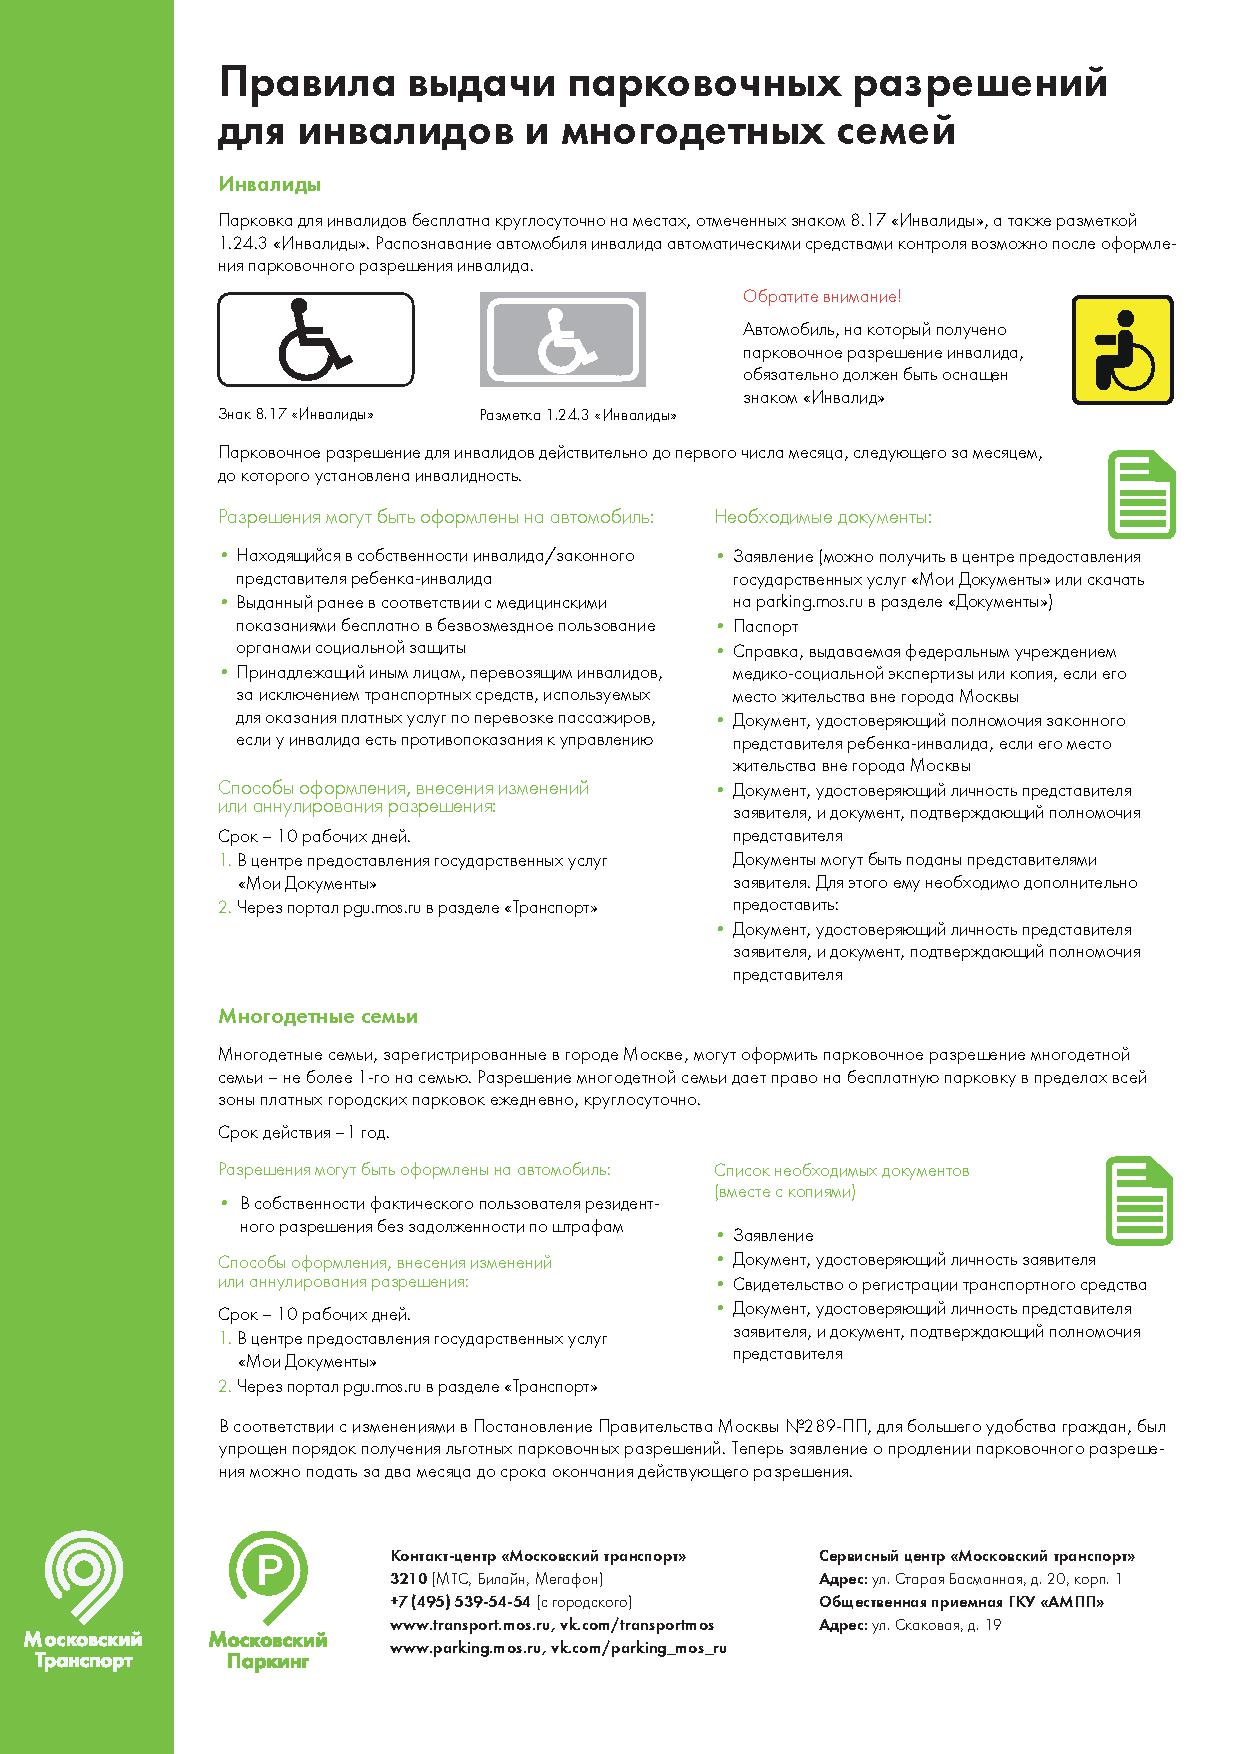 Правила выдачи парковочных разрешений для инвалидов и многодетных семей